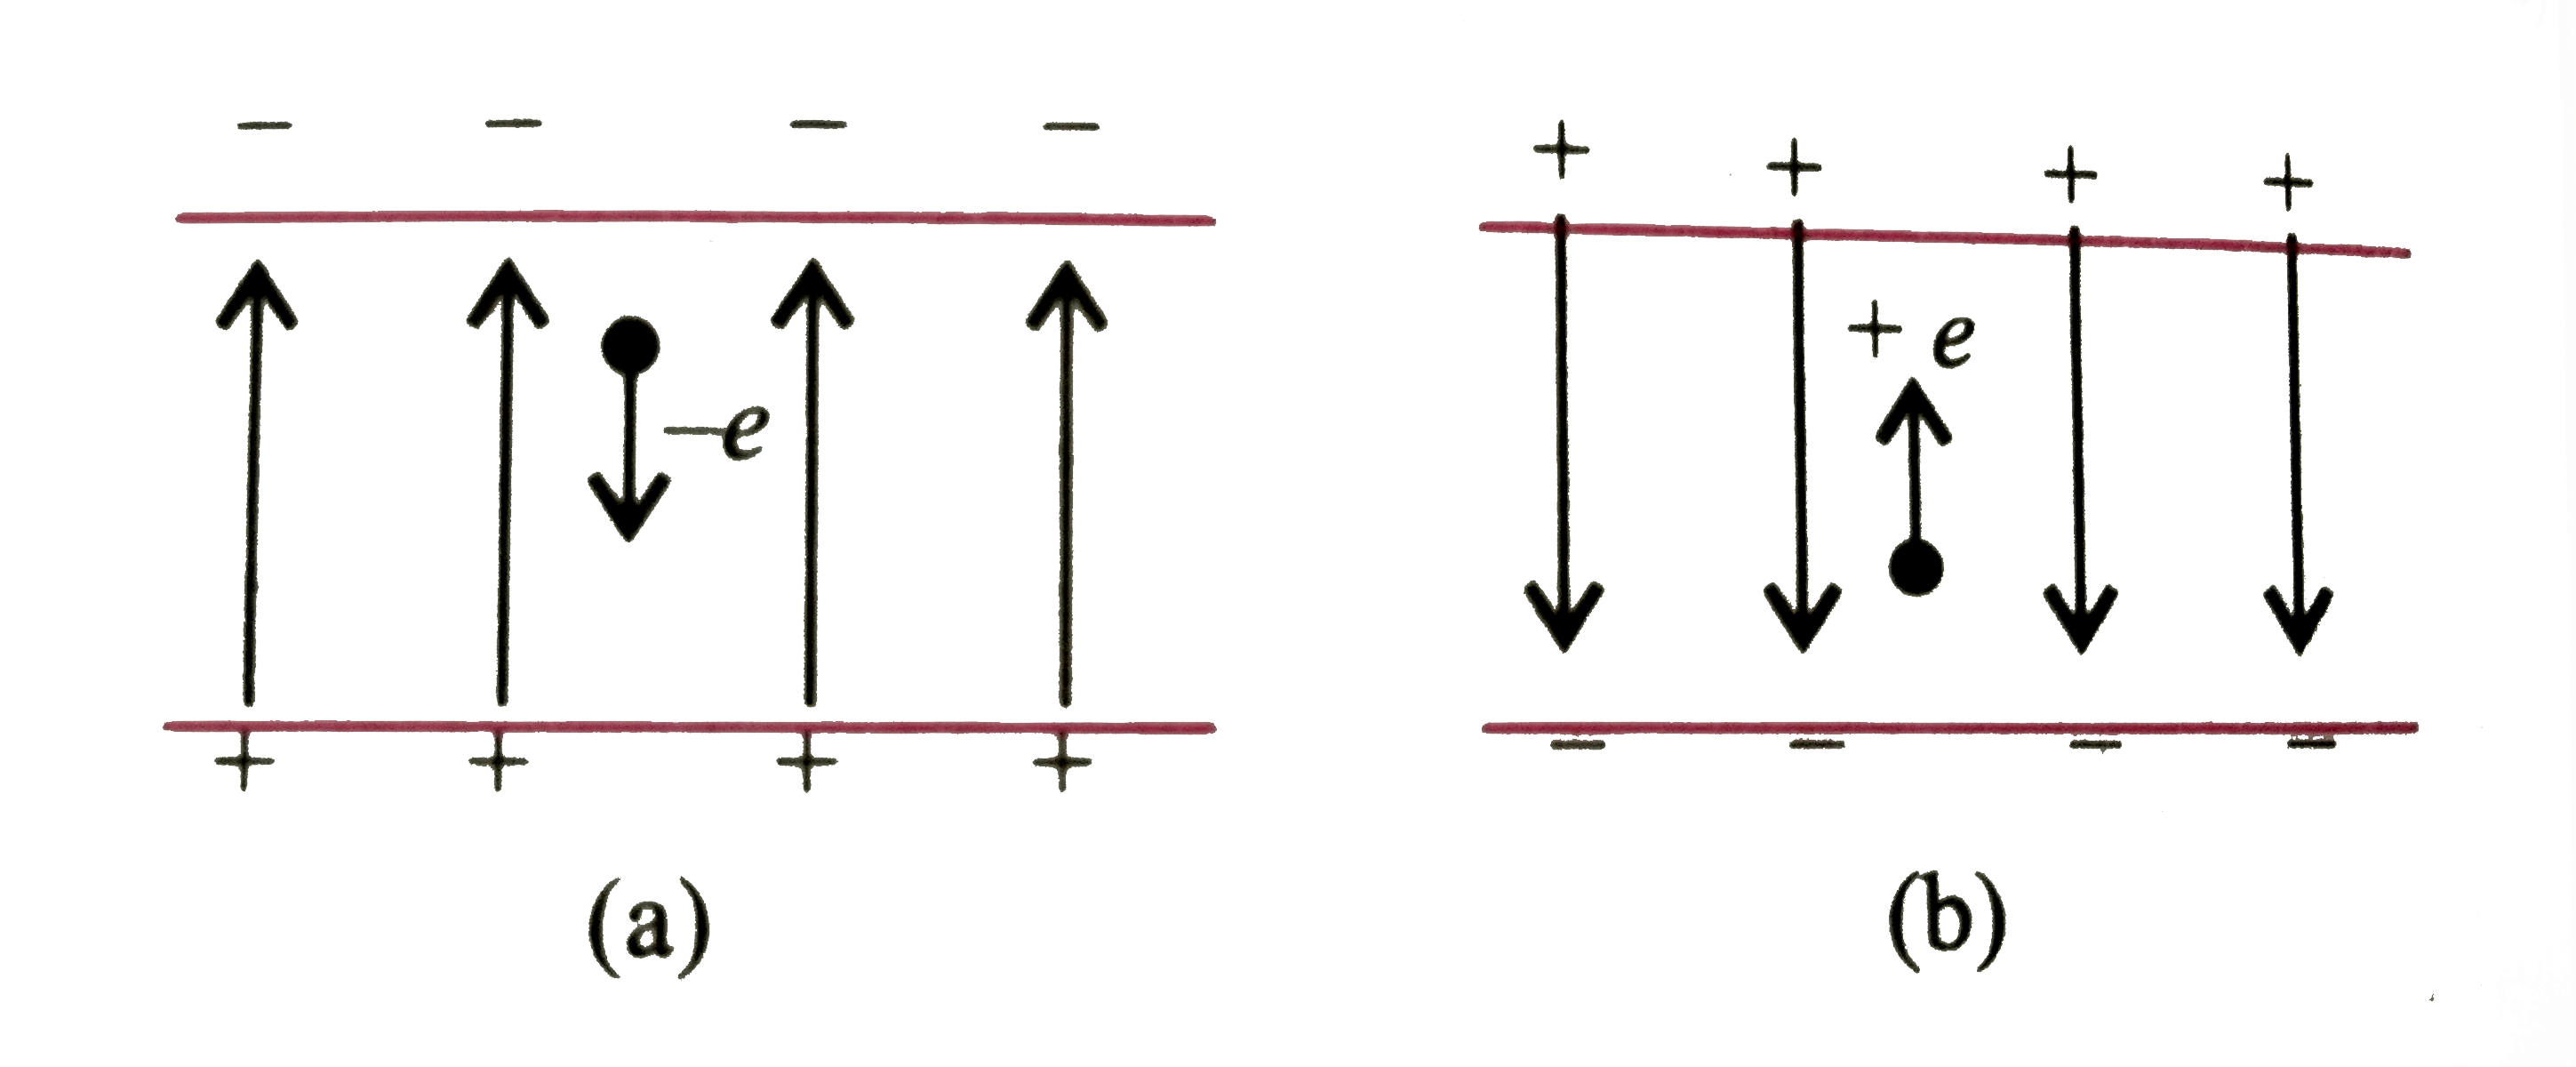 कोई इलेक्ट्रॉन E=2.0xx10^(4)  न्यूटन/कुलॉम  परिणाम के एकसमान विद्युत क्षेत्र 1.5 से. मी. दुरी तक गिरता है। [चित्र (a )] क्षेत्र का परिणाम समान रखते हुए इनकी दिशा उत्क्रमित कर दी जाती है तथा अब कोई प्रोटॉन इस क्षेत्र में उतनी ही दुरी तक गिरता है [चित्र (b )] दोनों प्रकरणों में गिरने में लगे समय की गणना कीजिए । इस परिस्थिति का 'गुरुत्व के अधीन मुक्त पतन ' से तुलना कीजिए ।